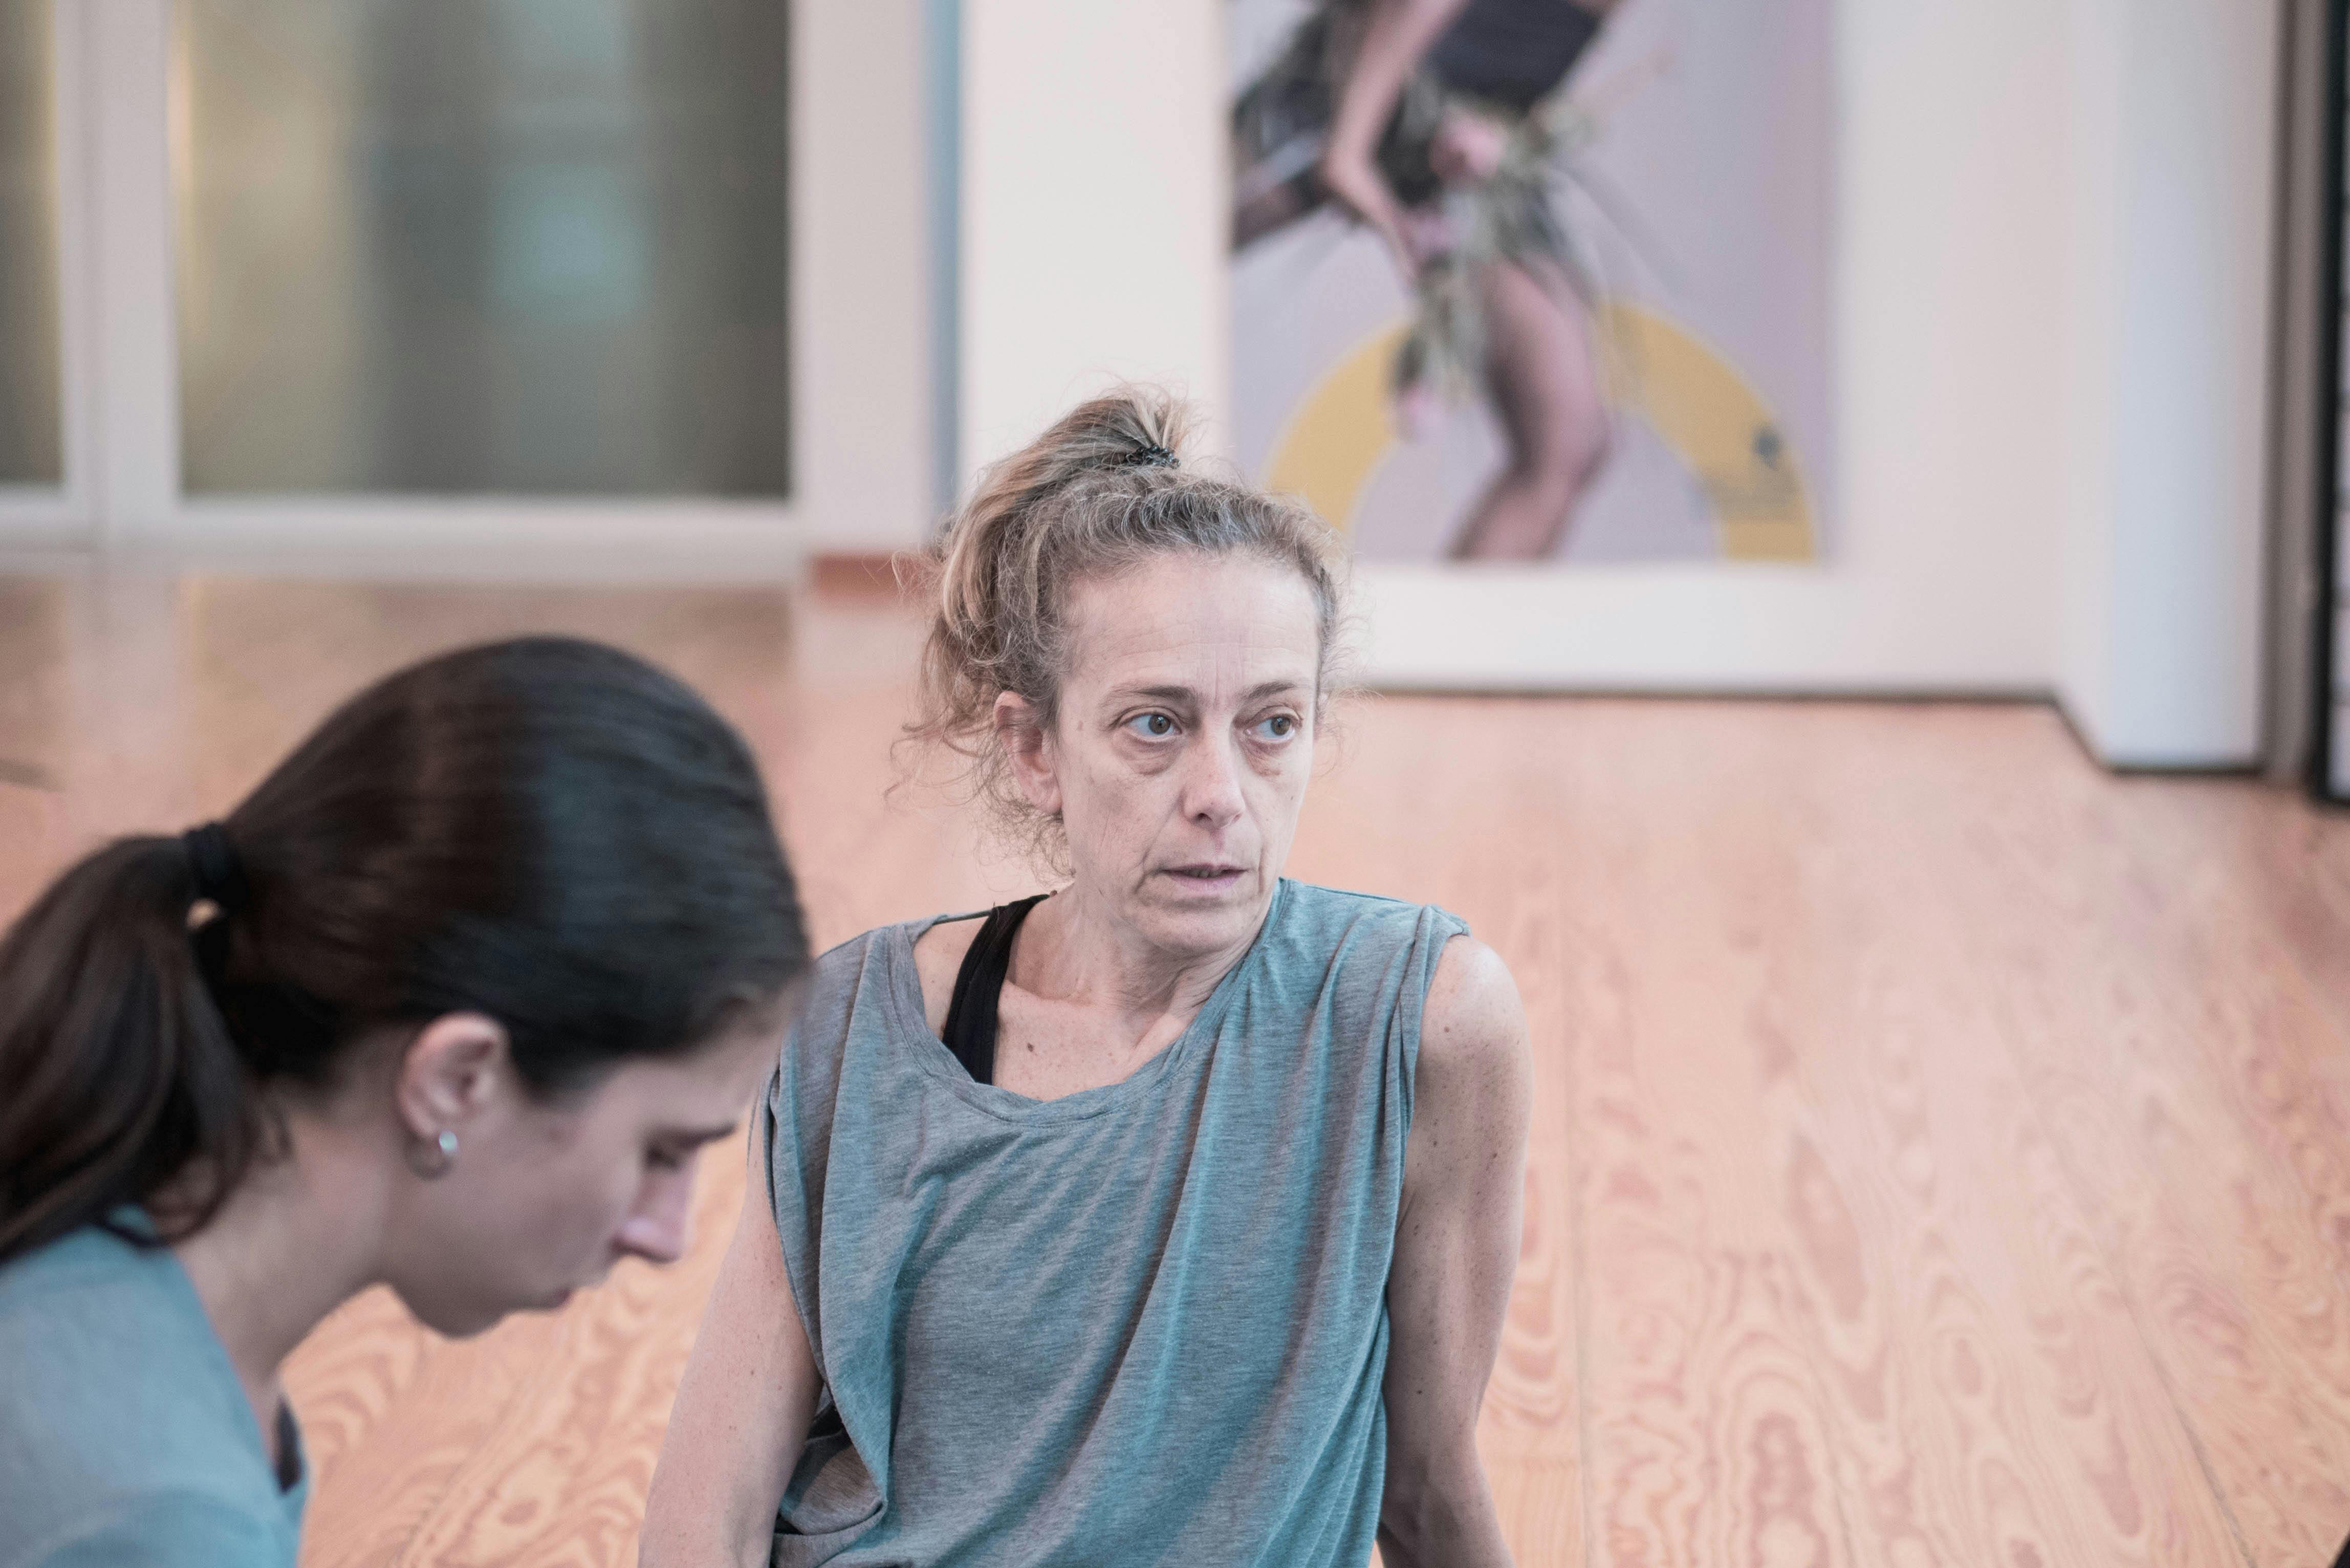 La coreografa Cristina Kristal Rizzo al lavoro nello Studio e parla con i danzatori. Accanto a lei una danzatrice ascolta.